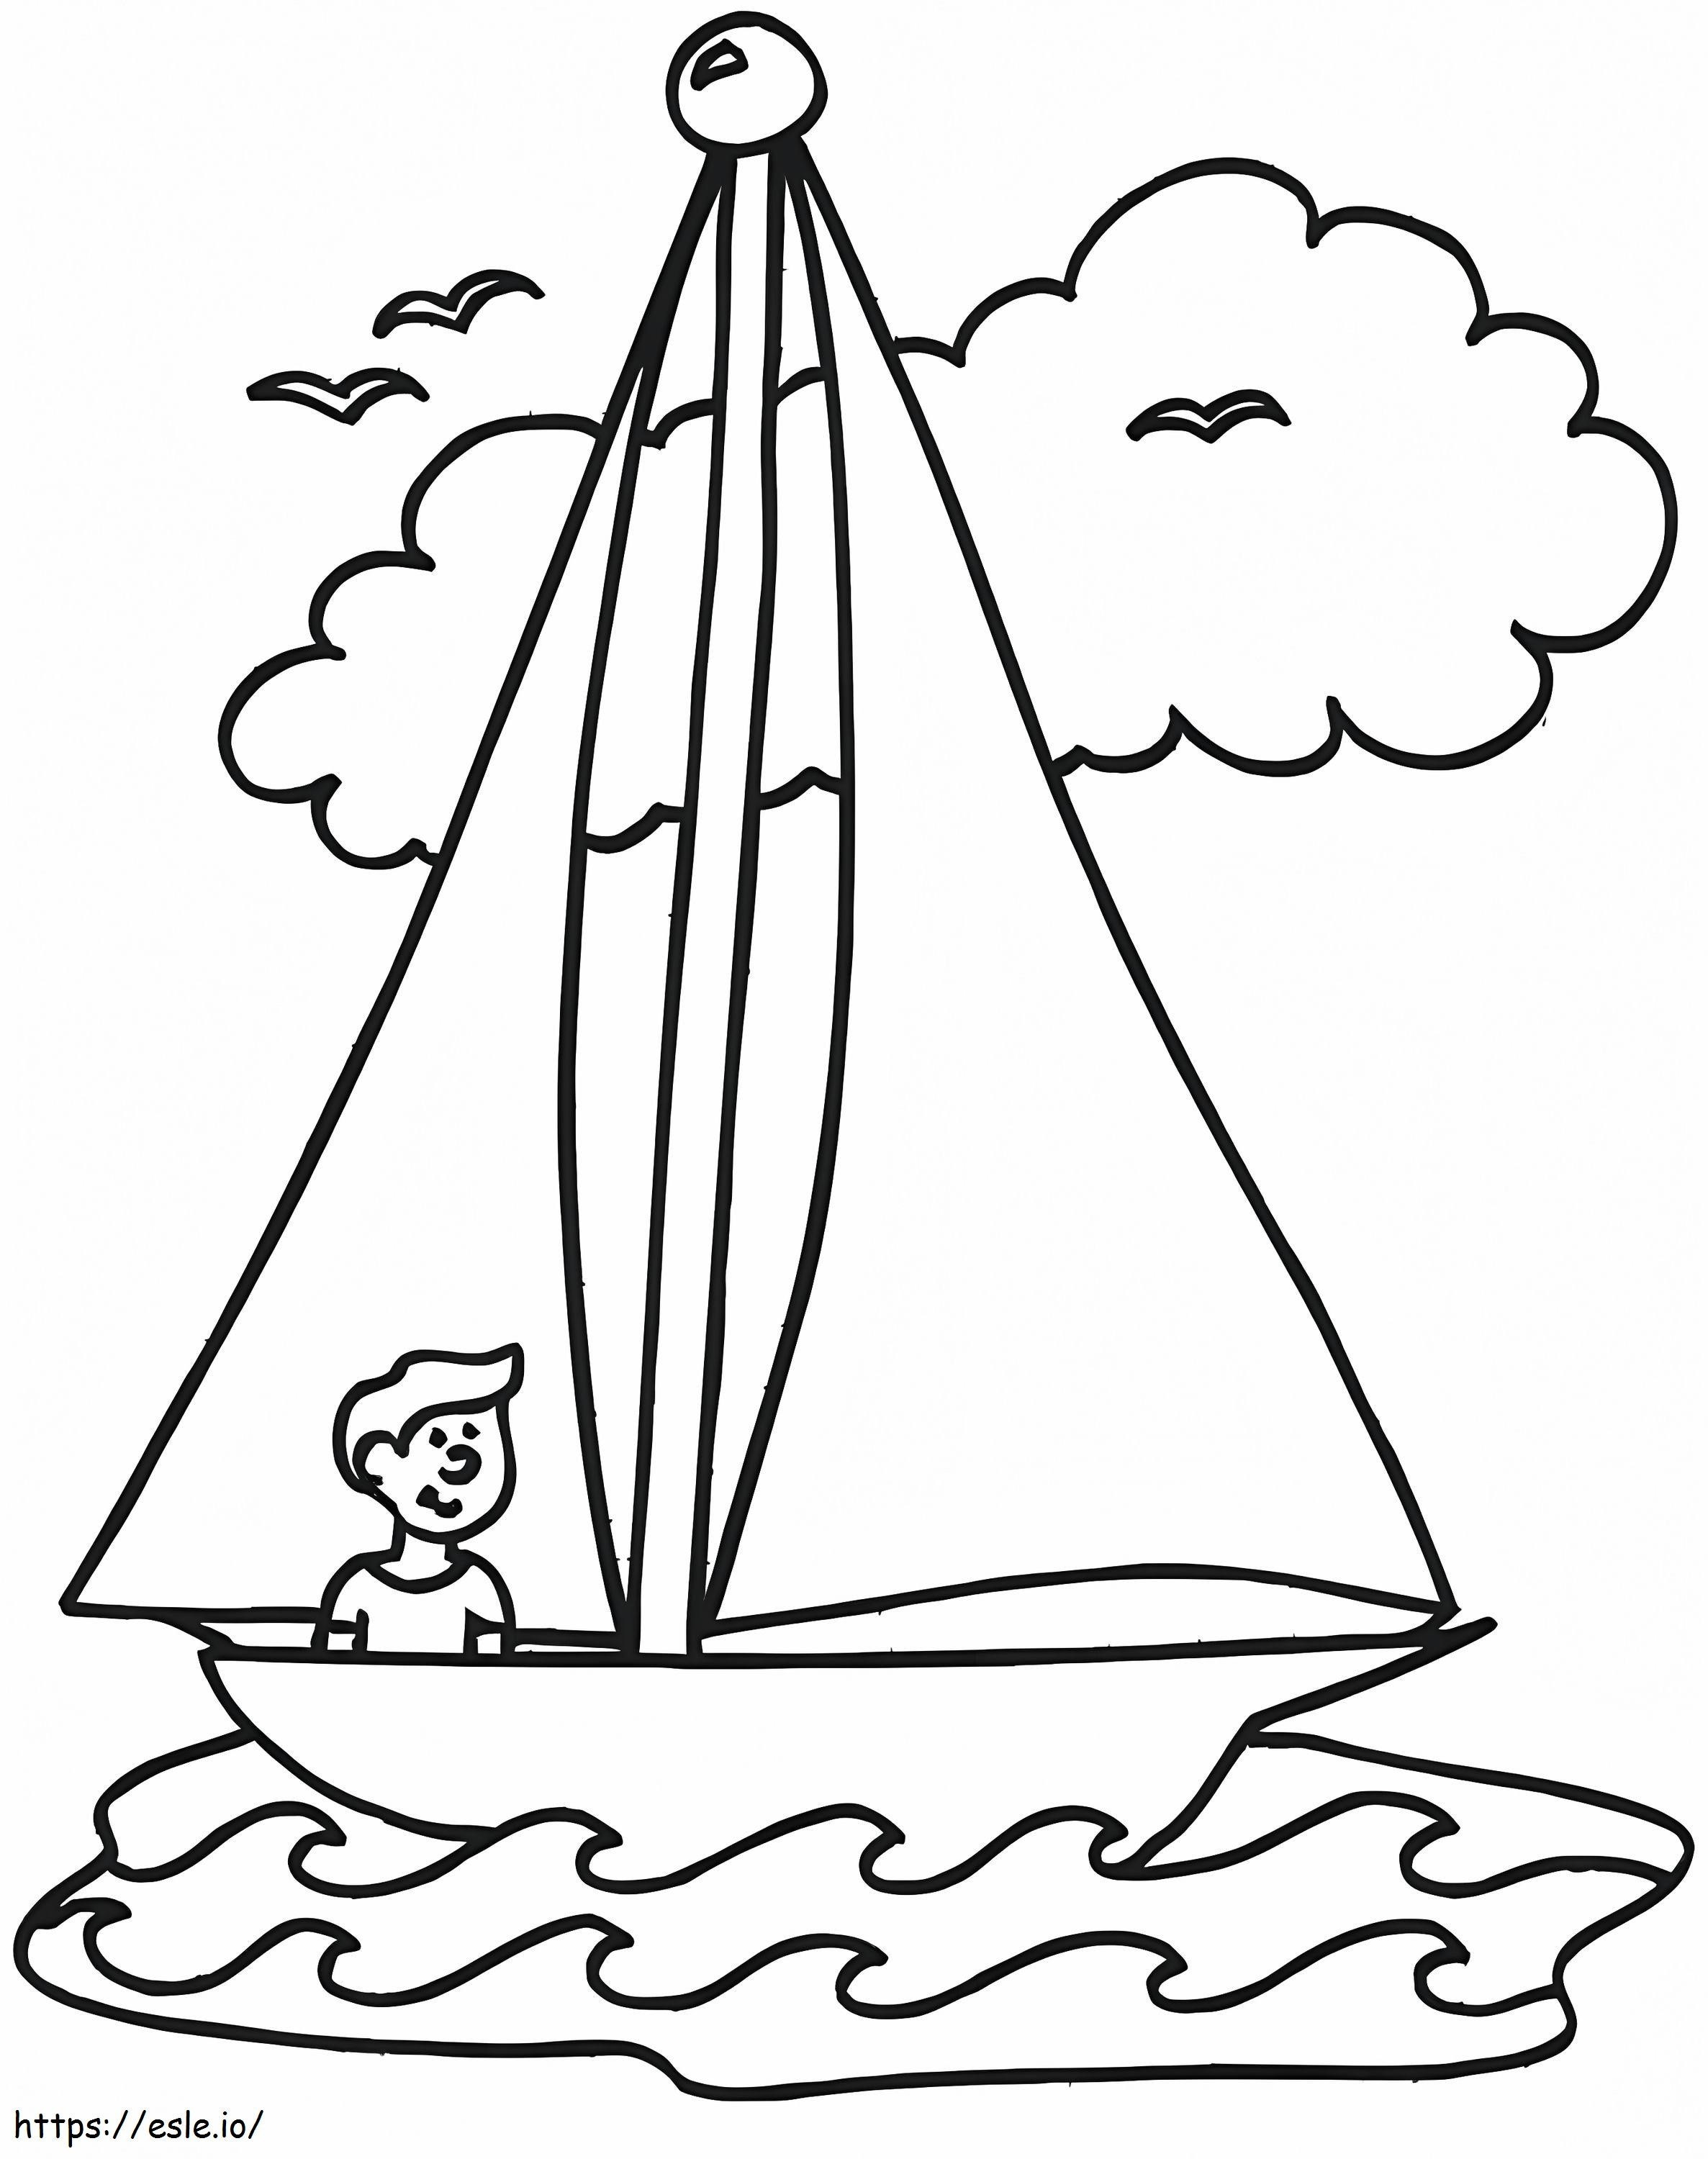 Ein Junge auf einem Segelboot ausmalbilder